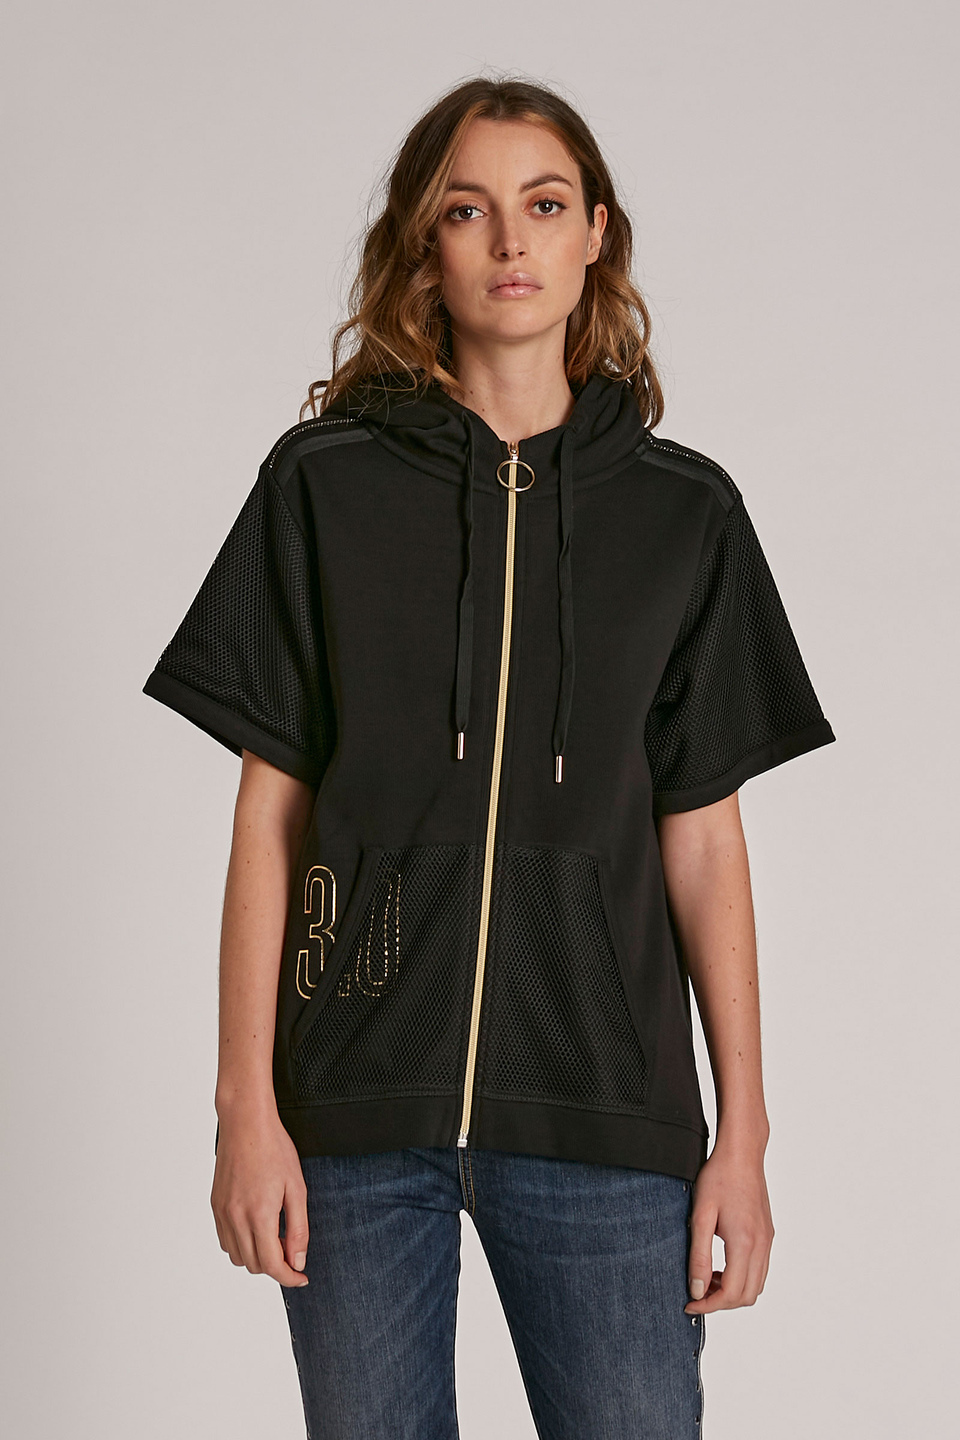 Women's regular-fit zip-up cotton sweatshirt - La Martina - Official Online Shop